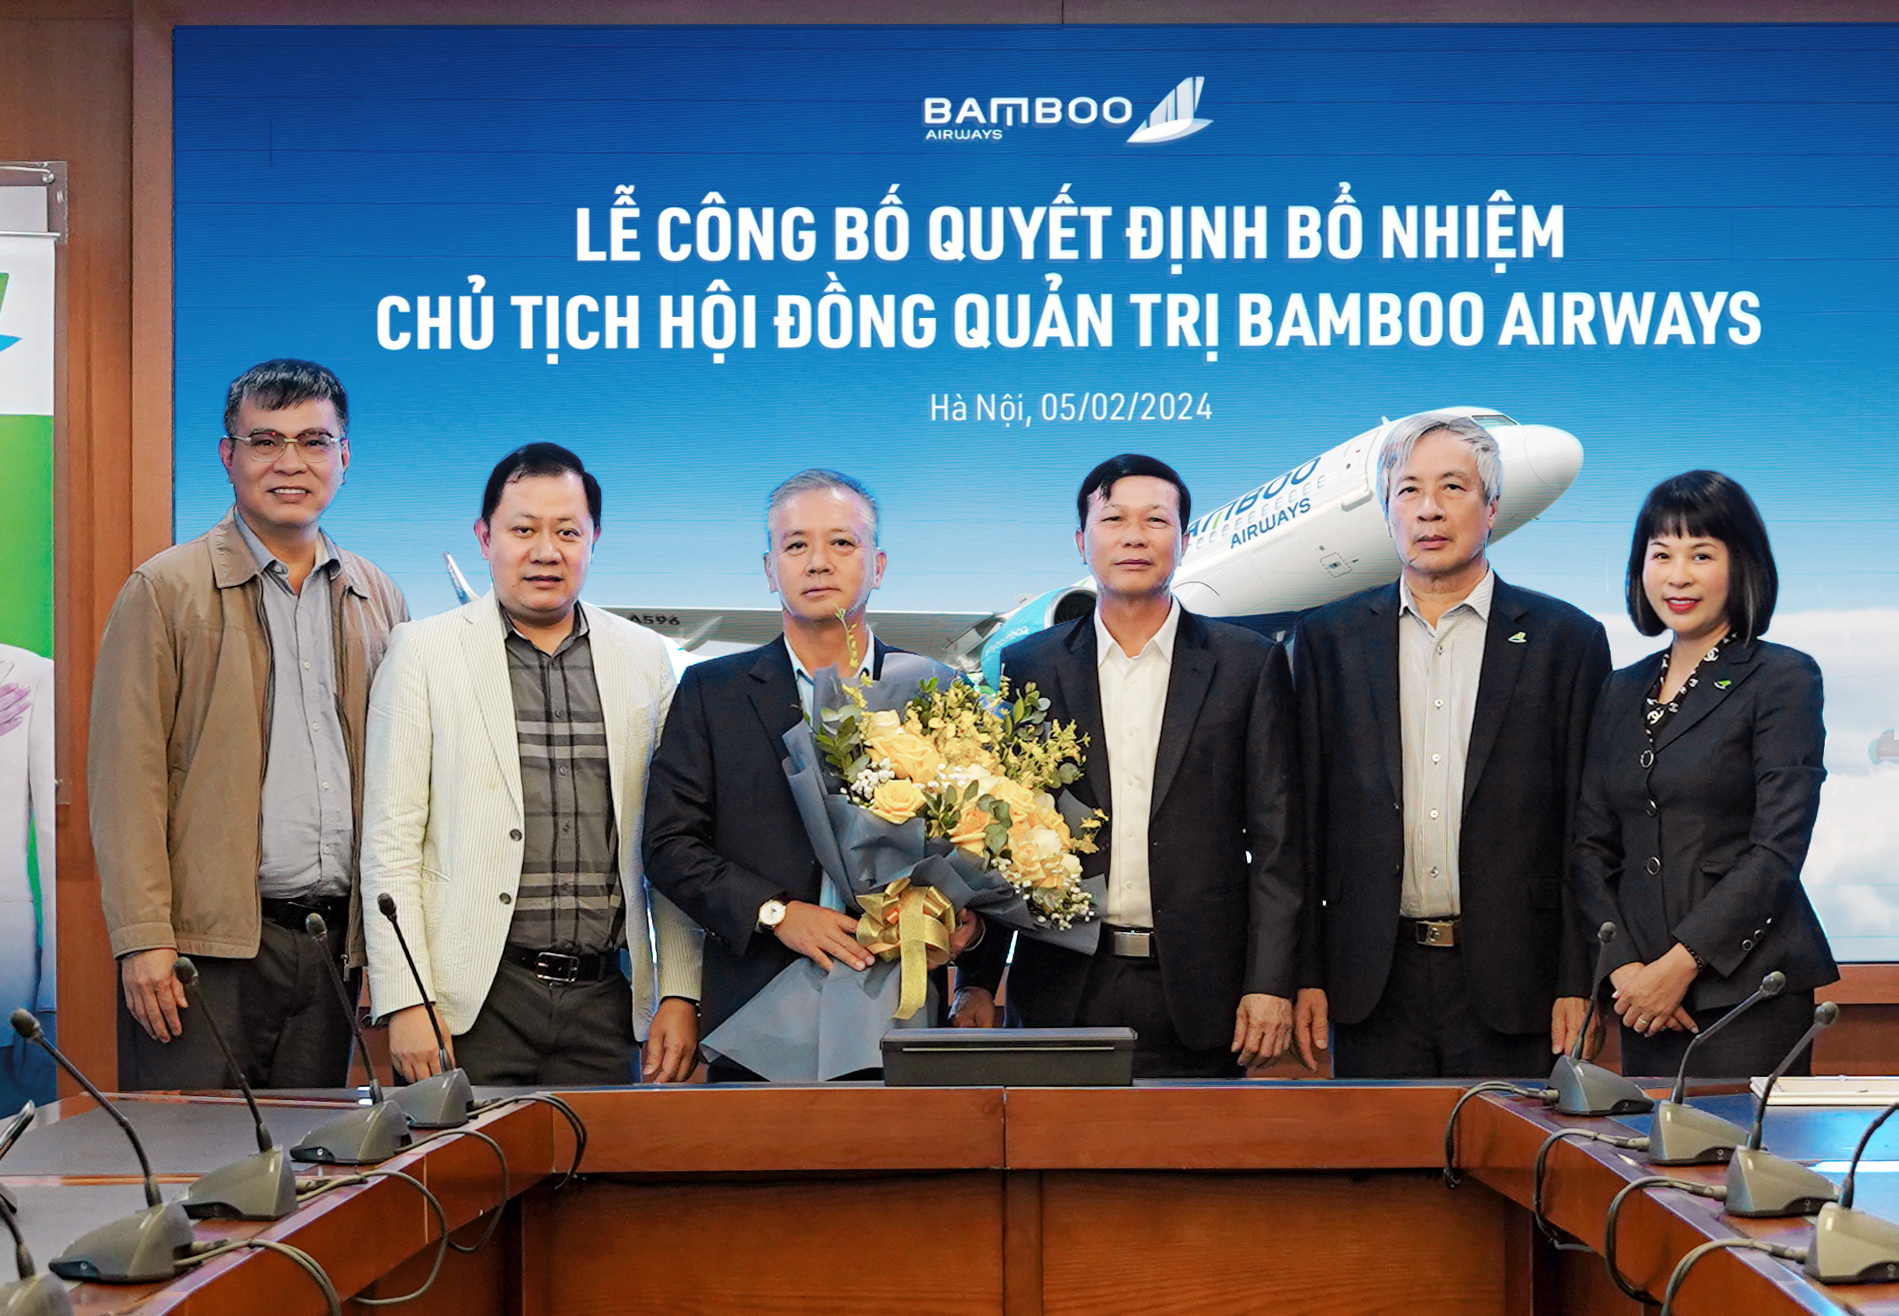 Chân dung ông Phan Đình Tuệ vừa "ngồi ghế nóng" Chủ tịch Bamboo Airways- Ảnh 1.